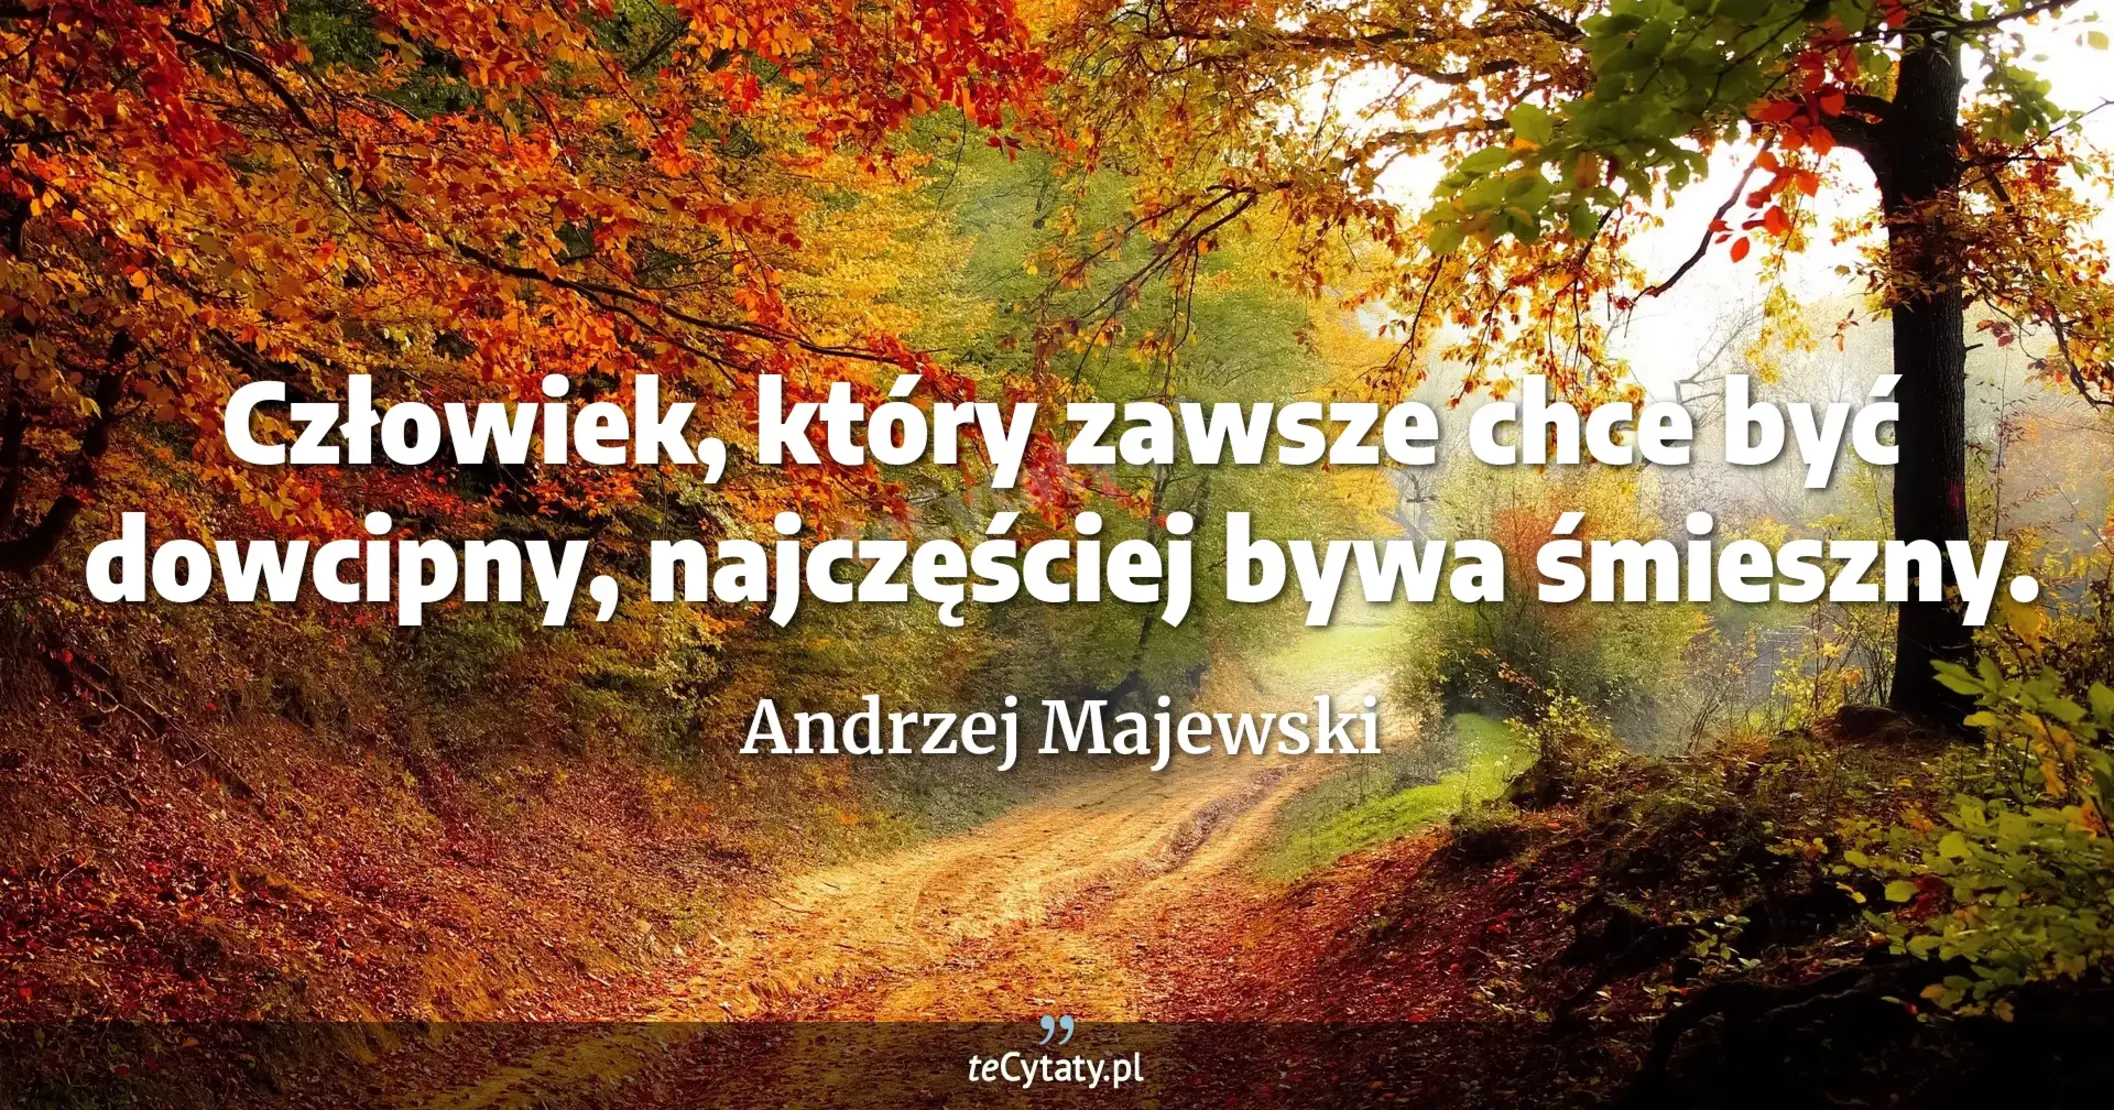 Człowiek, który zawsze chce być dowcipny, najczęściej bywa śmieszny. - Andrzej Majewski